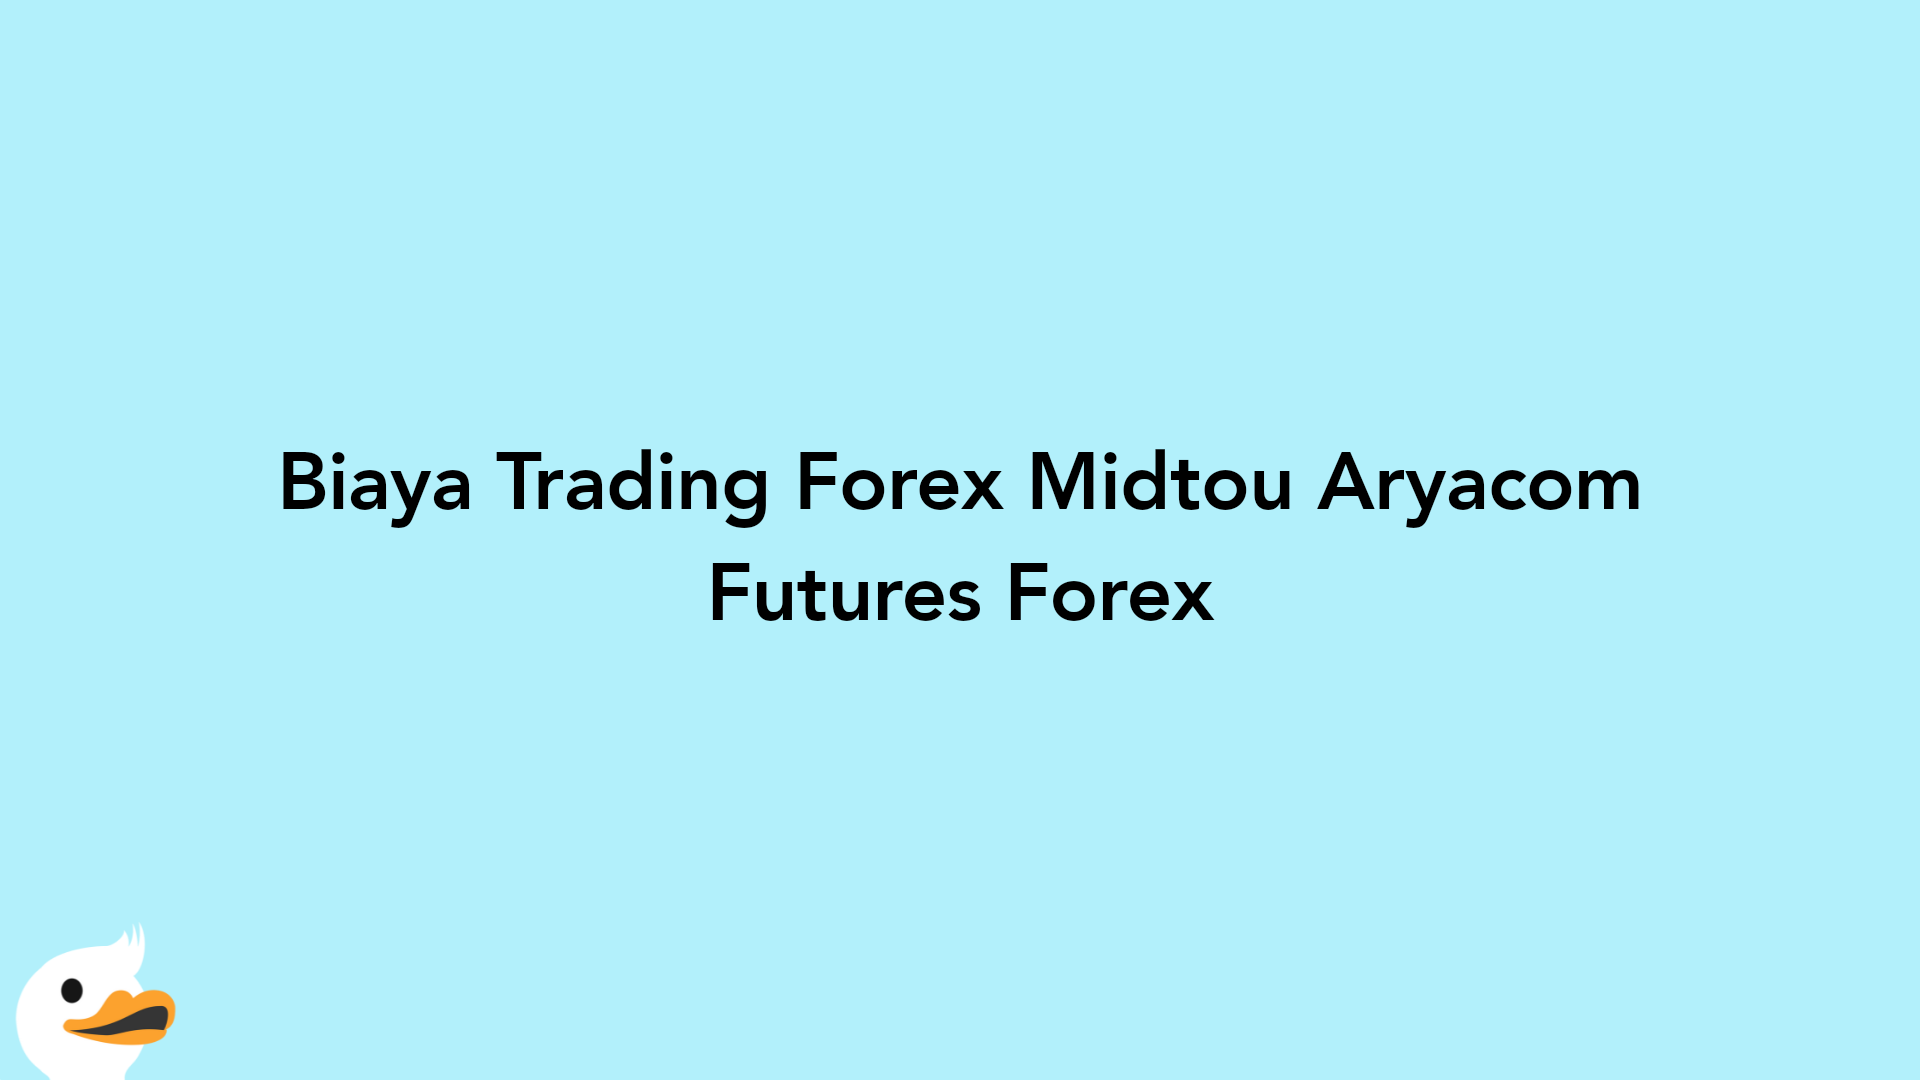 Biaya Trading Forex Midtou Aryacom Futures Forex